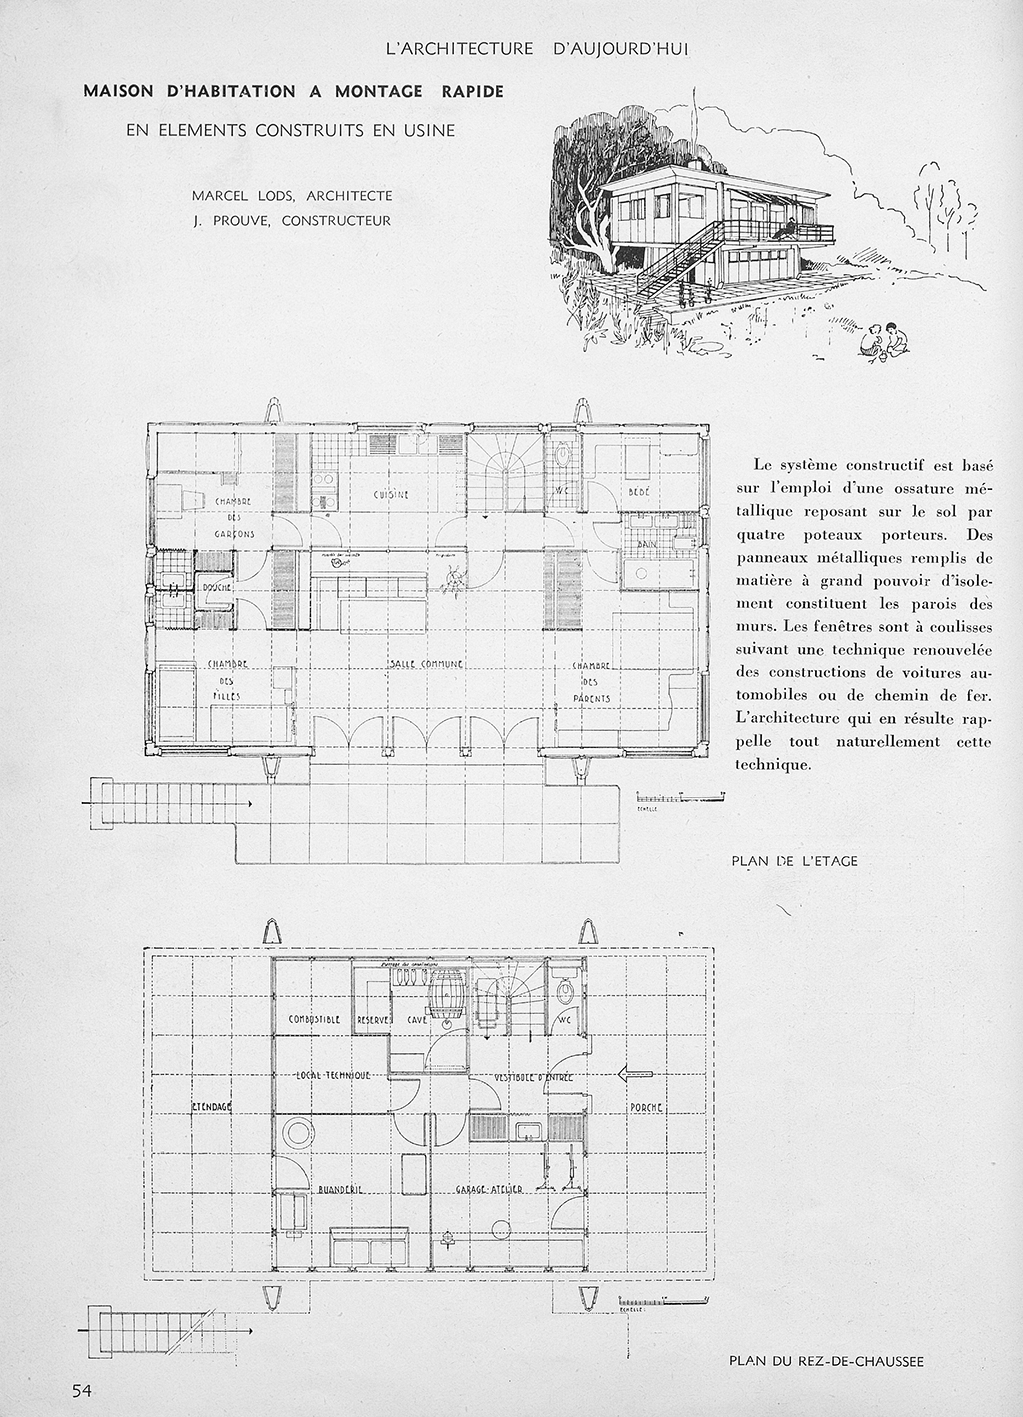 Maison d’habitation à montage rapide (Jean Prouvé avec Marcel Lods, arch.) paru dans <i>L’Architecture d’aujourd’hui,</i> n° 4, 1946.